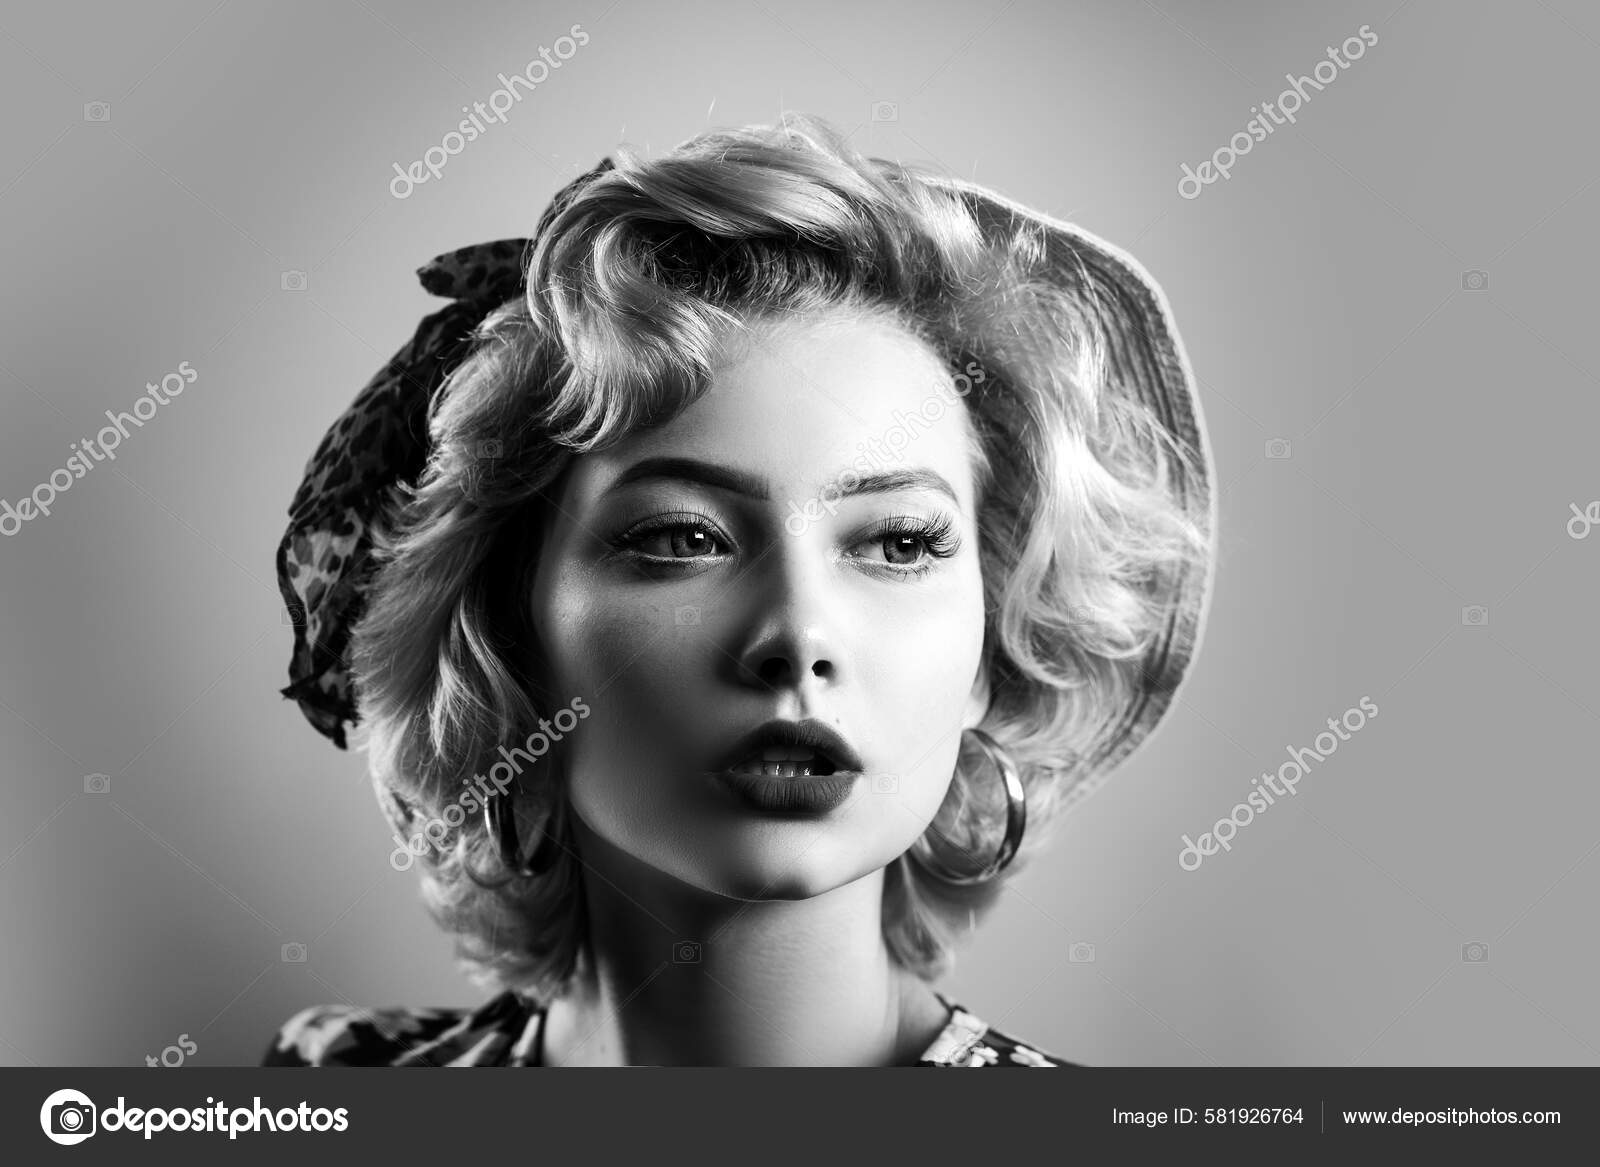 https://st.depositphotos.com/3584053/58192/i/1600/depositphotos_581926764-stock-photo-pin-girl-vintage-beautiful-woman.jpg